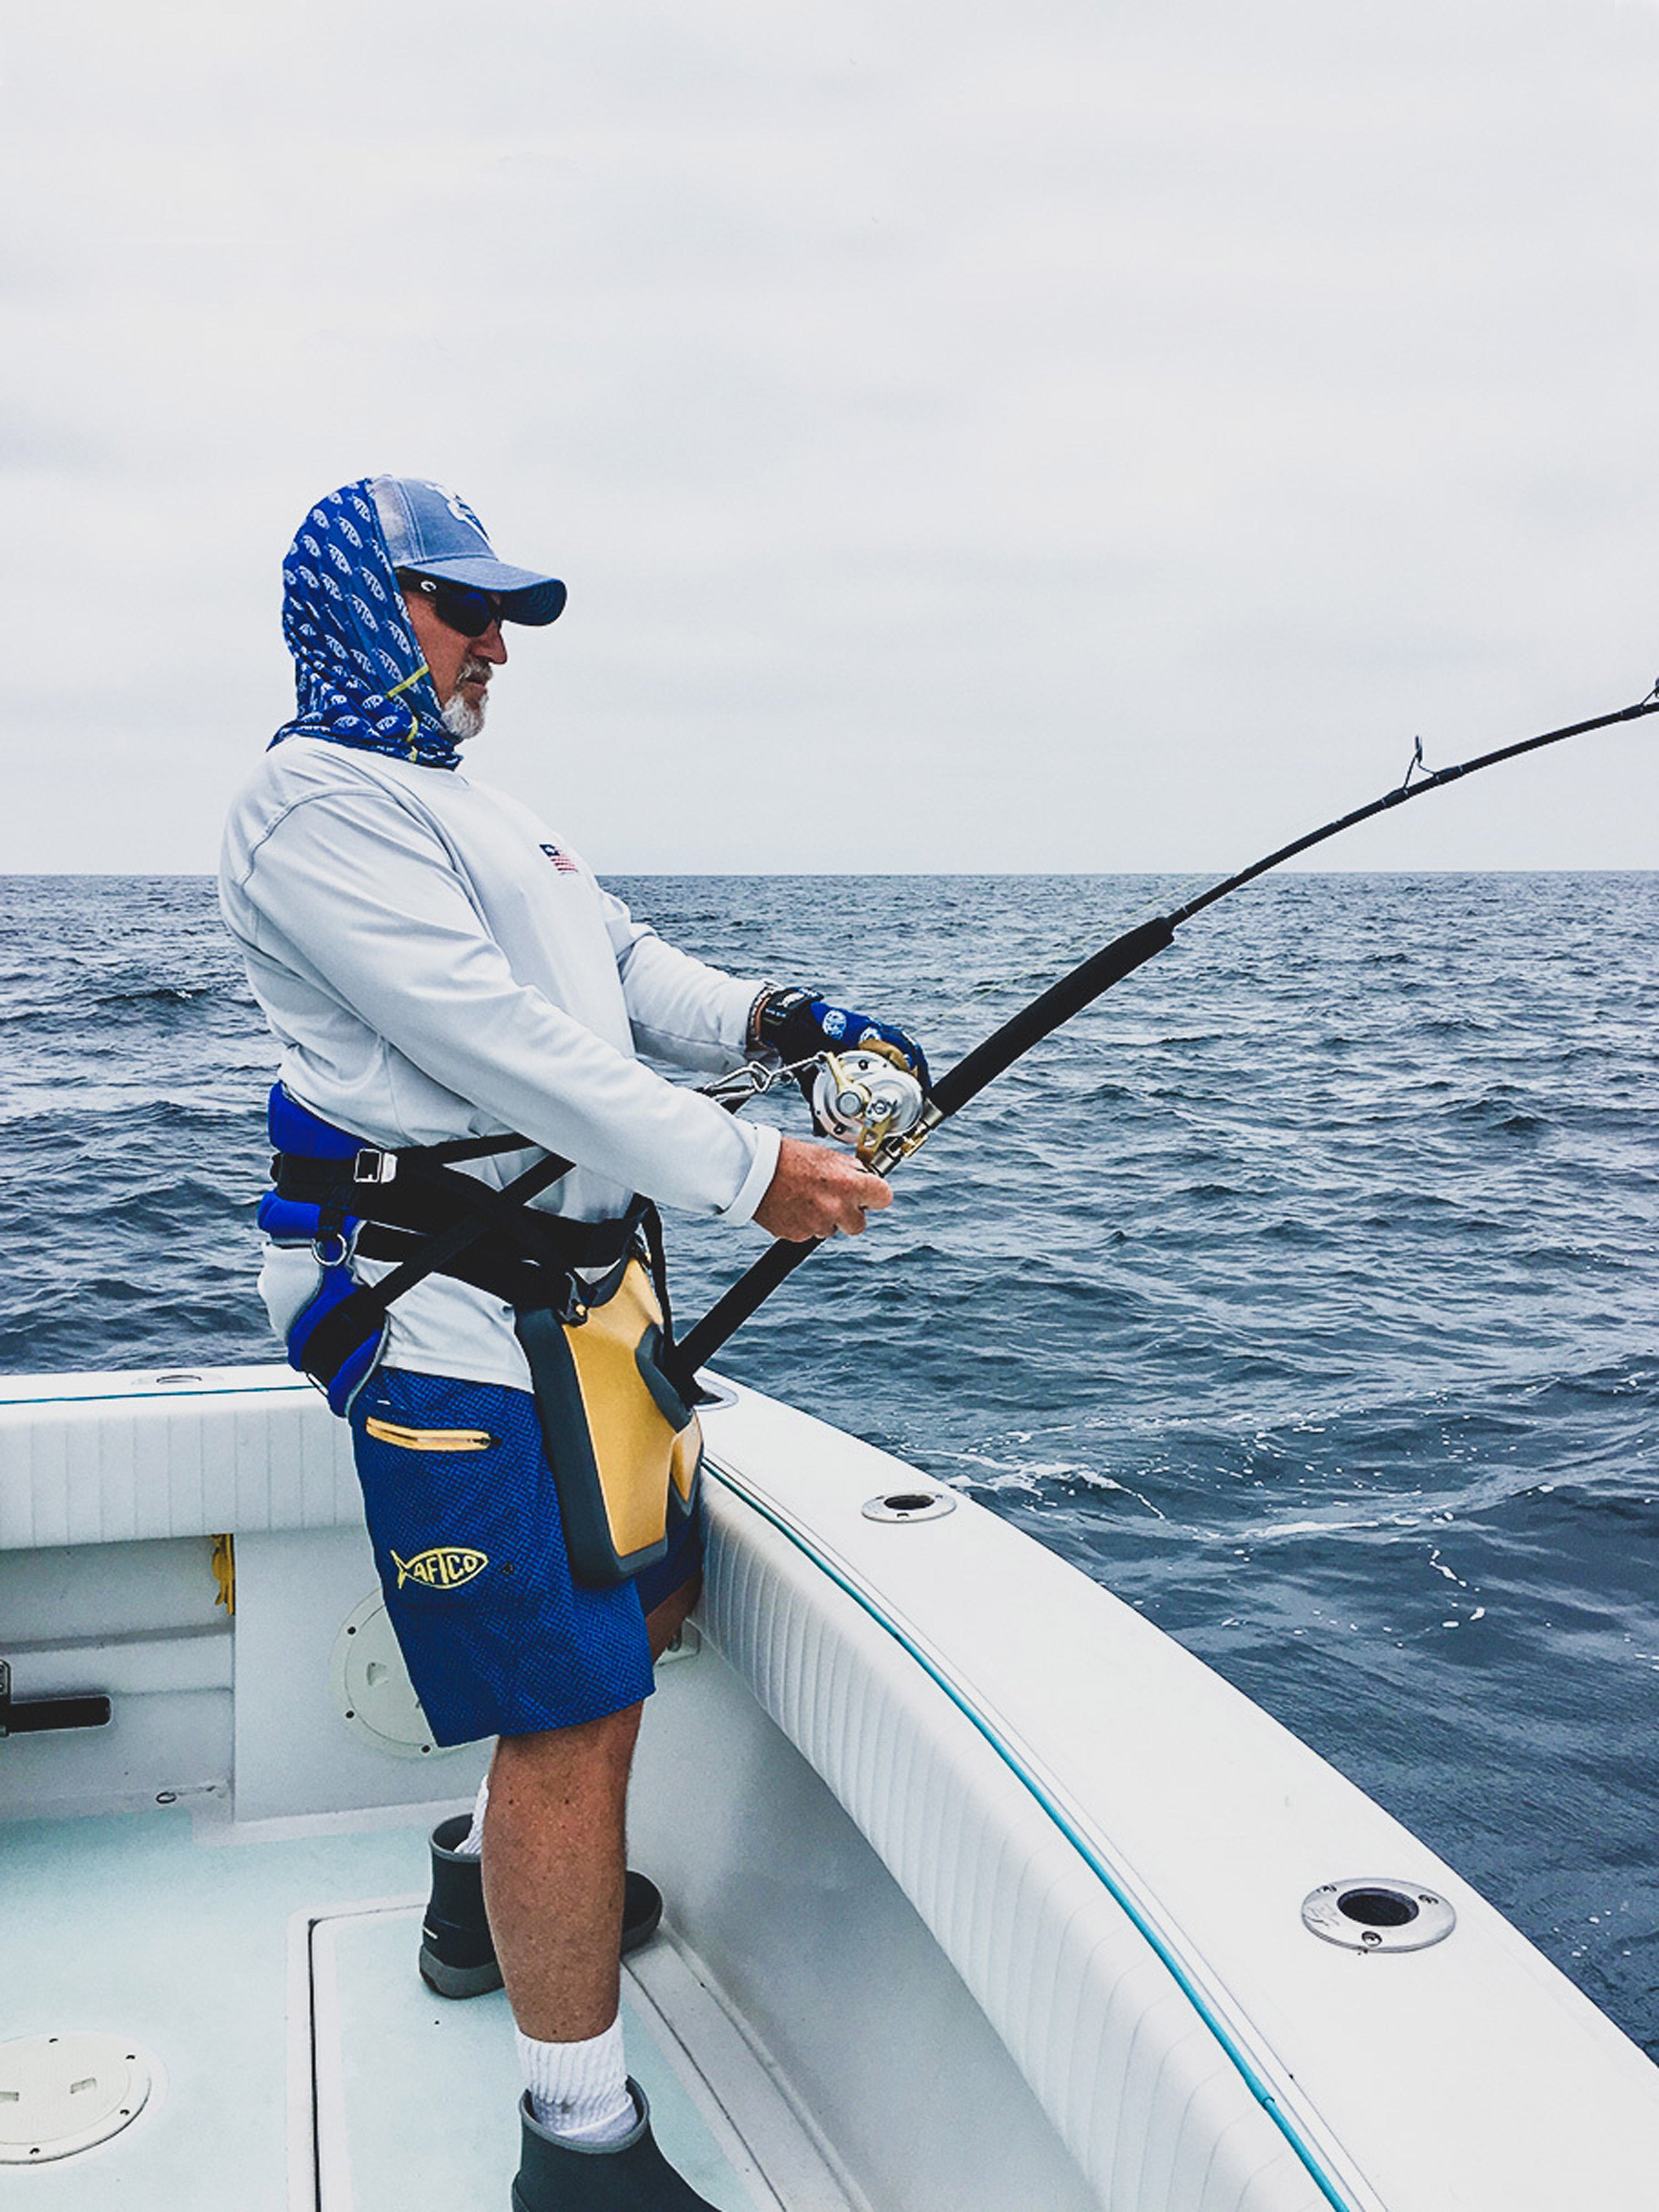 Waist Belt Shoulder Harness Rod Holder Belt Adjustable Rod Holder Fishing  Set Fishing Rod Support